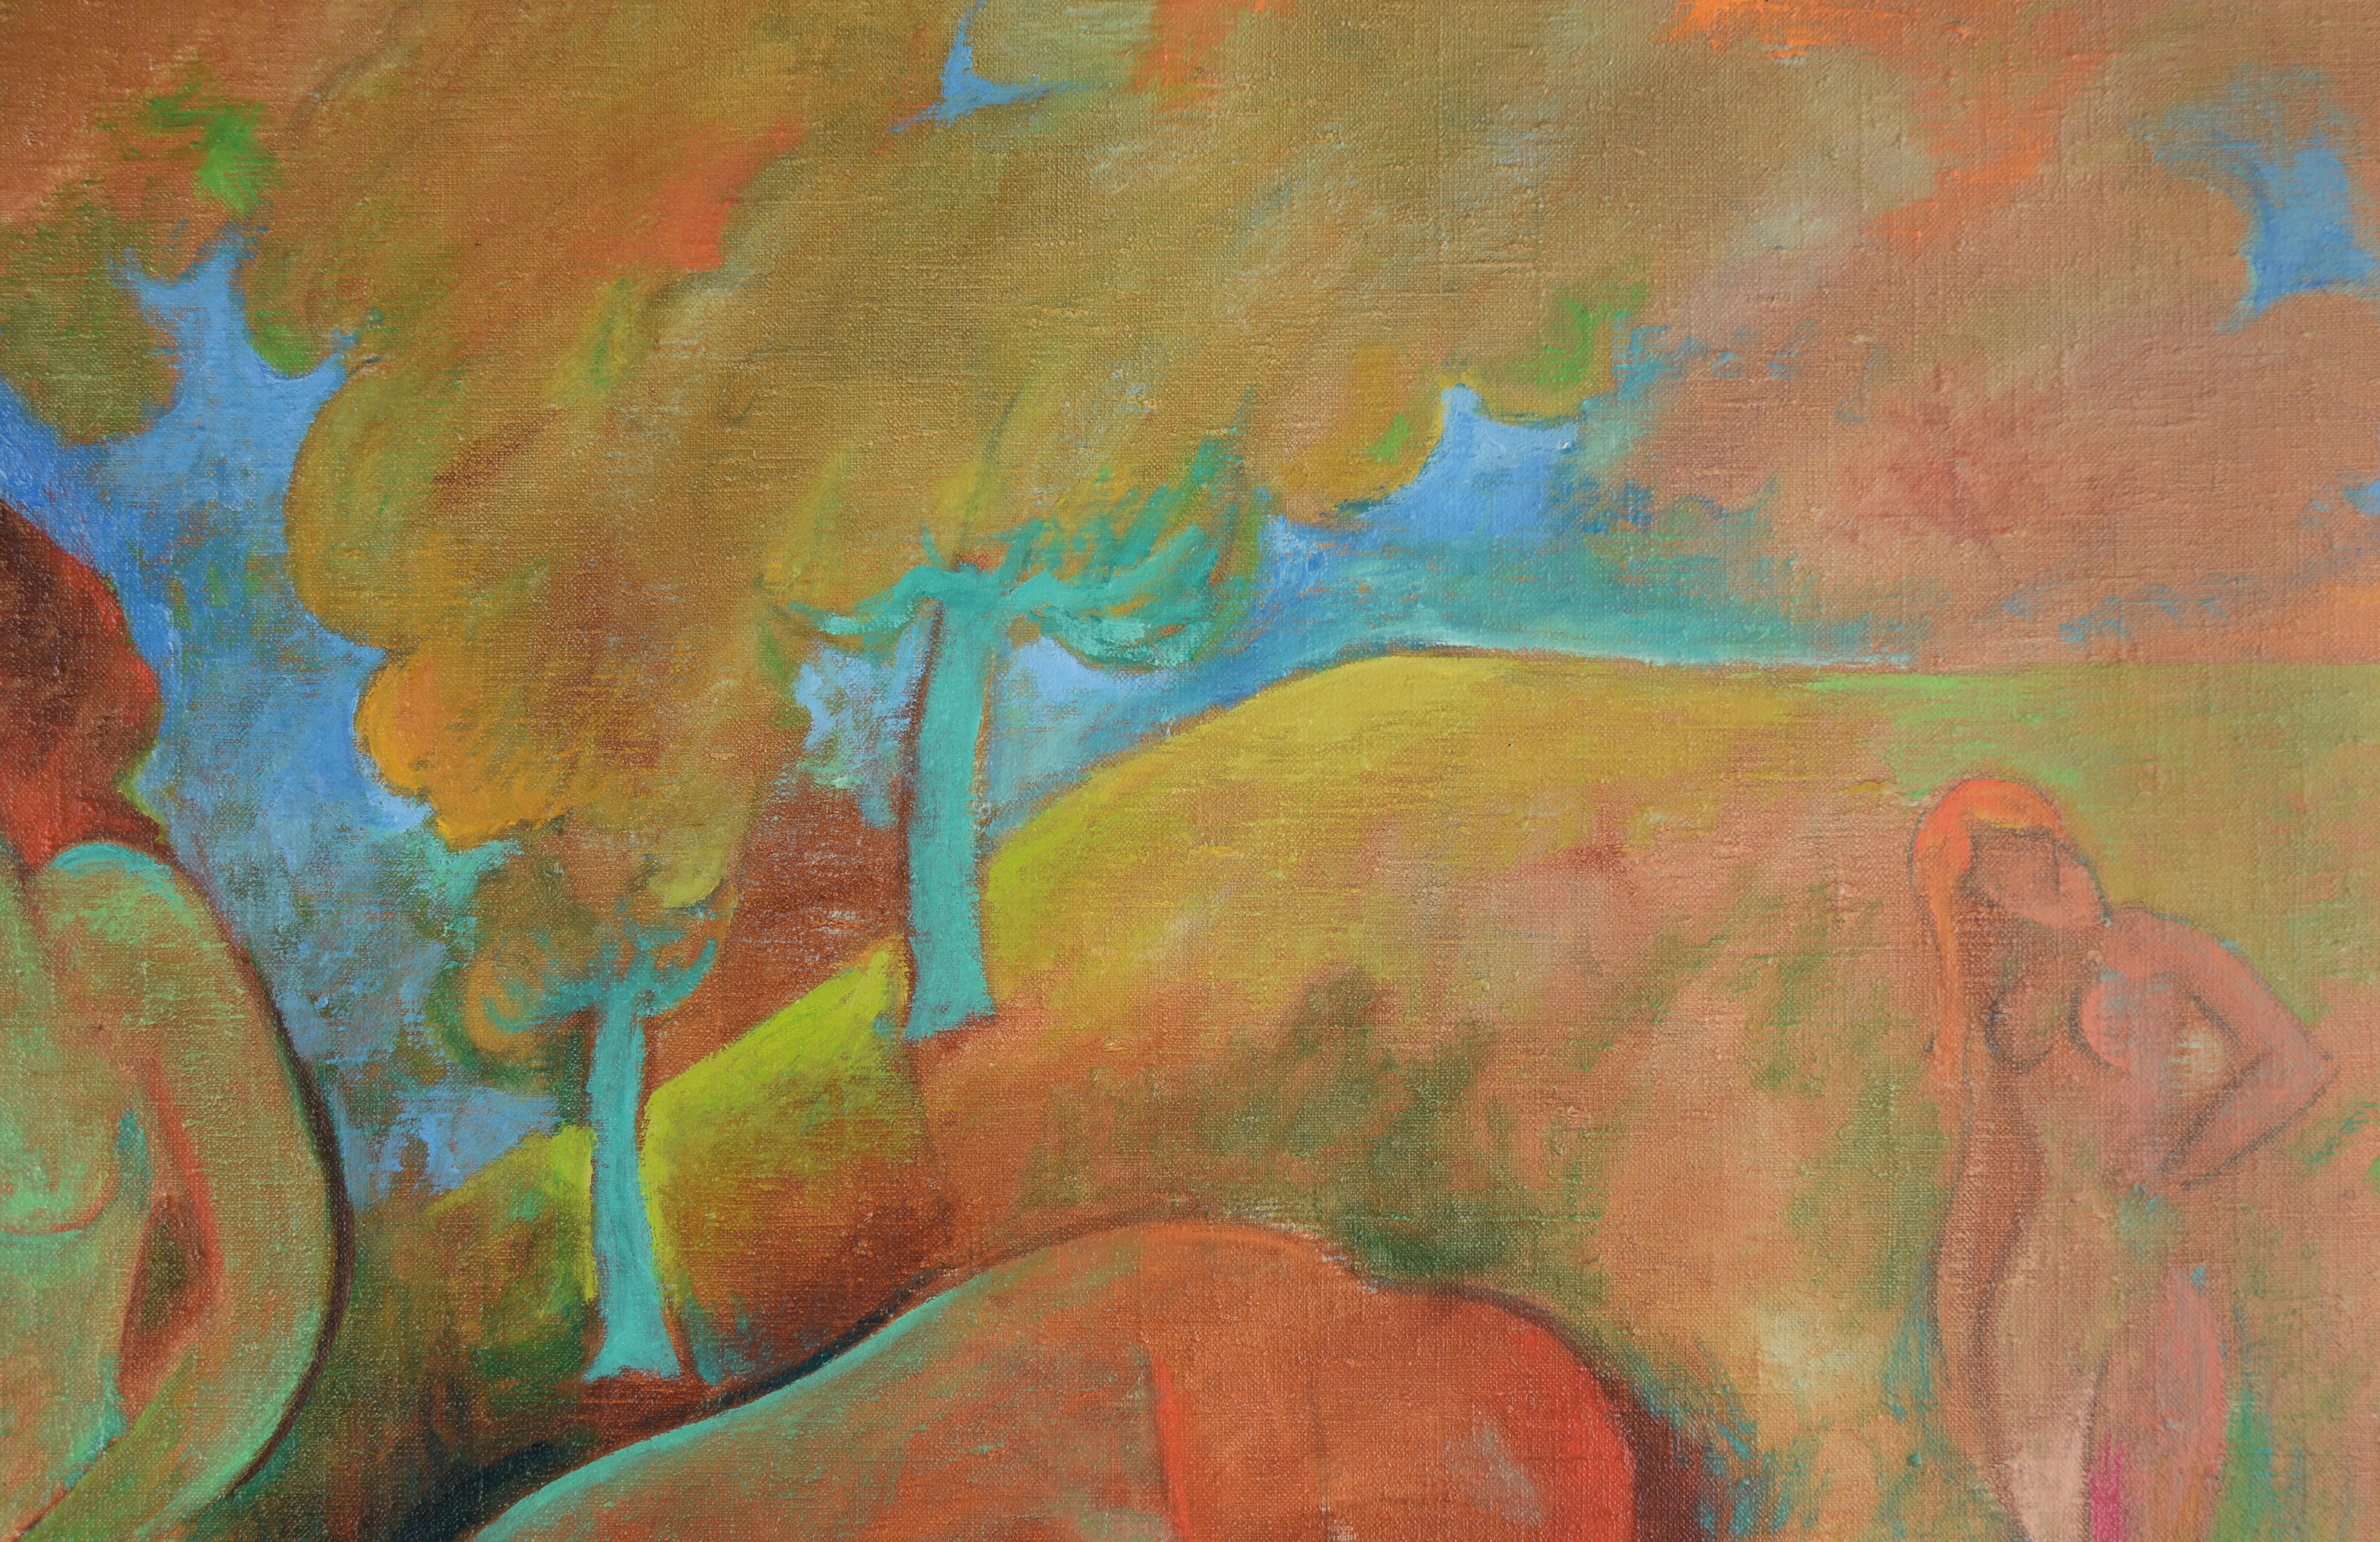 Lebendige Darstellung einer Gruppe von Badenden in einem üppigen, farbenfrohen Wald von fauvistischer Erfindung des kalifornischen Künstlers Don Klopfer (1920-2009). Die stilisierten Aktfiguren, die in einer leuchtenden und lebhaften Farbpalette